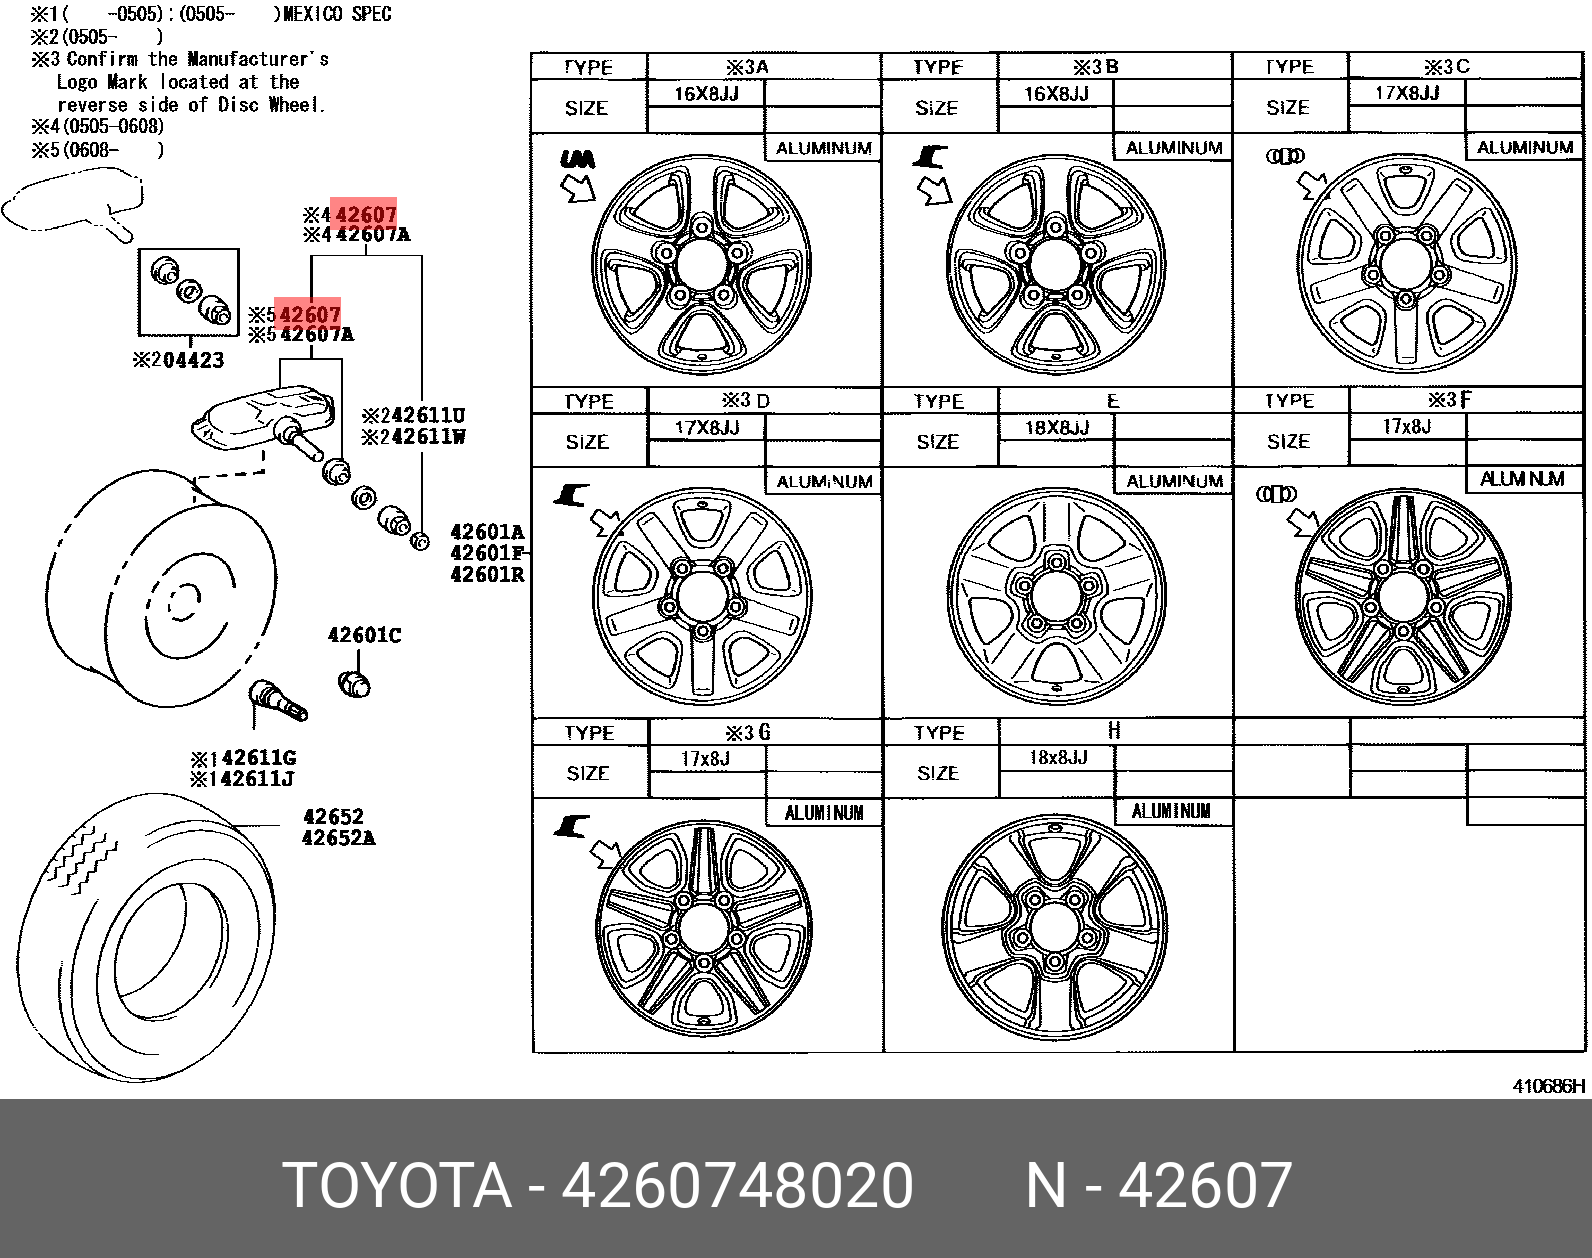 Датчик давления в шине - Toyota 42607-48020